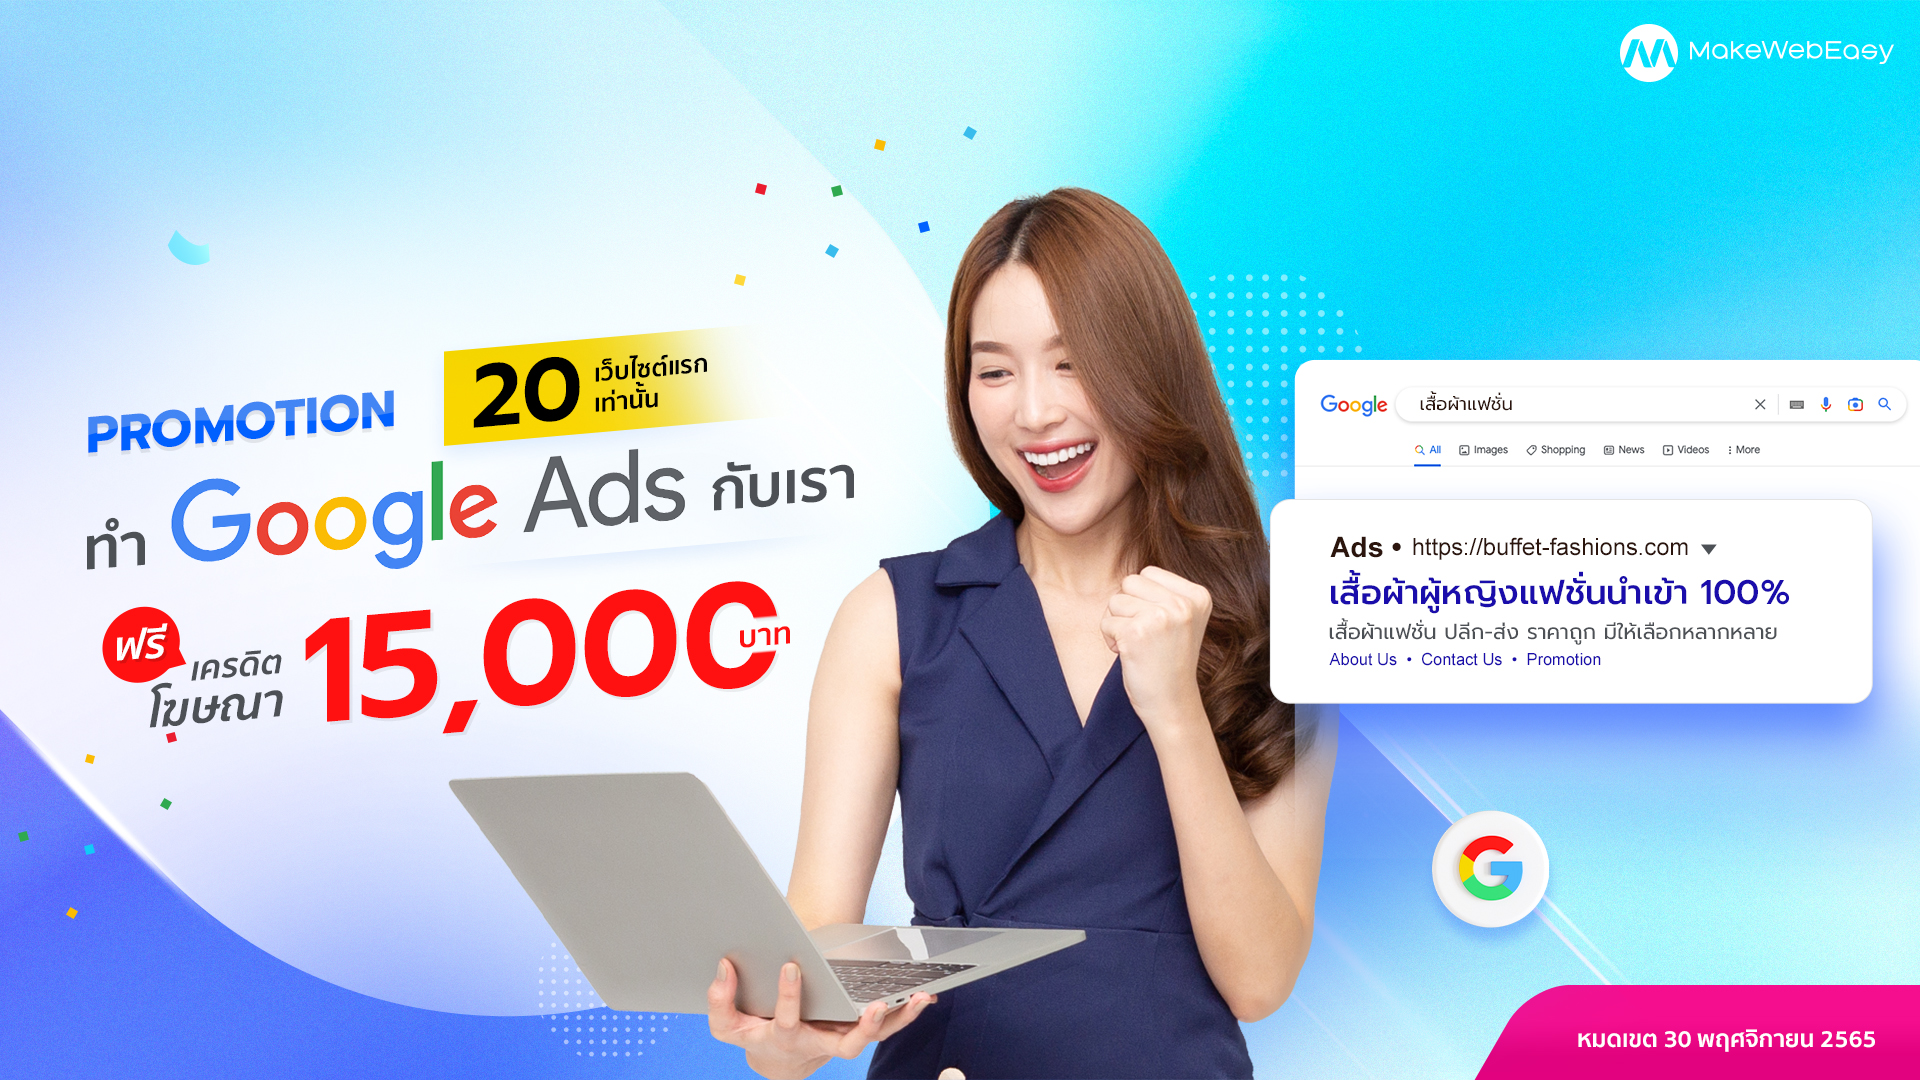 PROMOTION ทำโฆษณา Google Ads 6 เดือน รับเครดิตฟรี 15,000 บาท